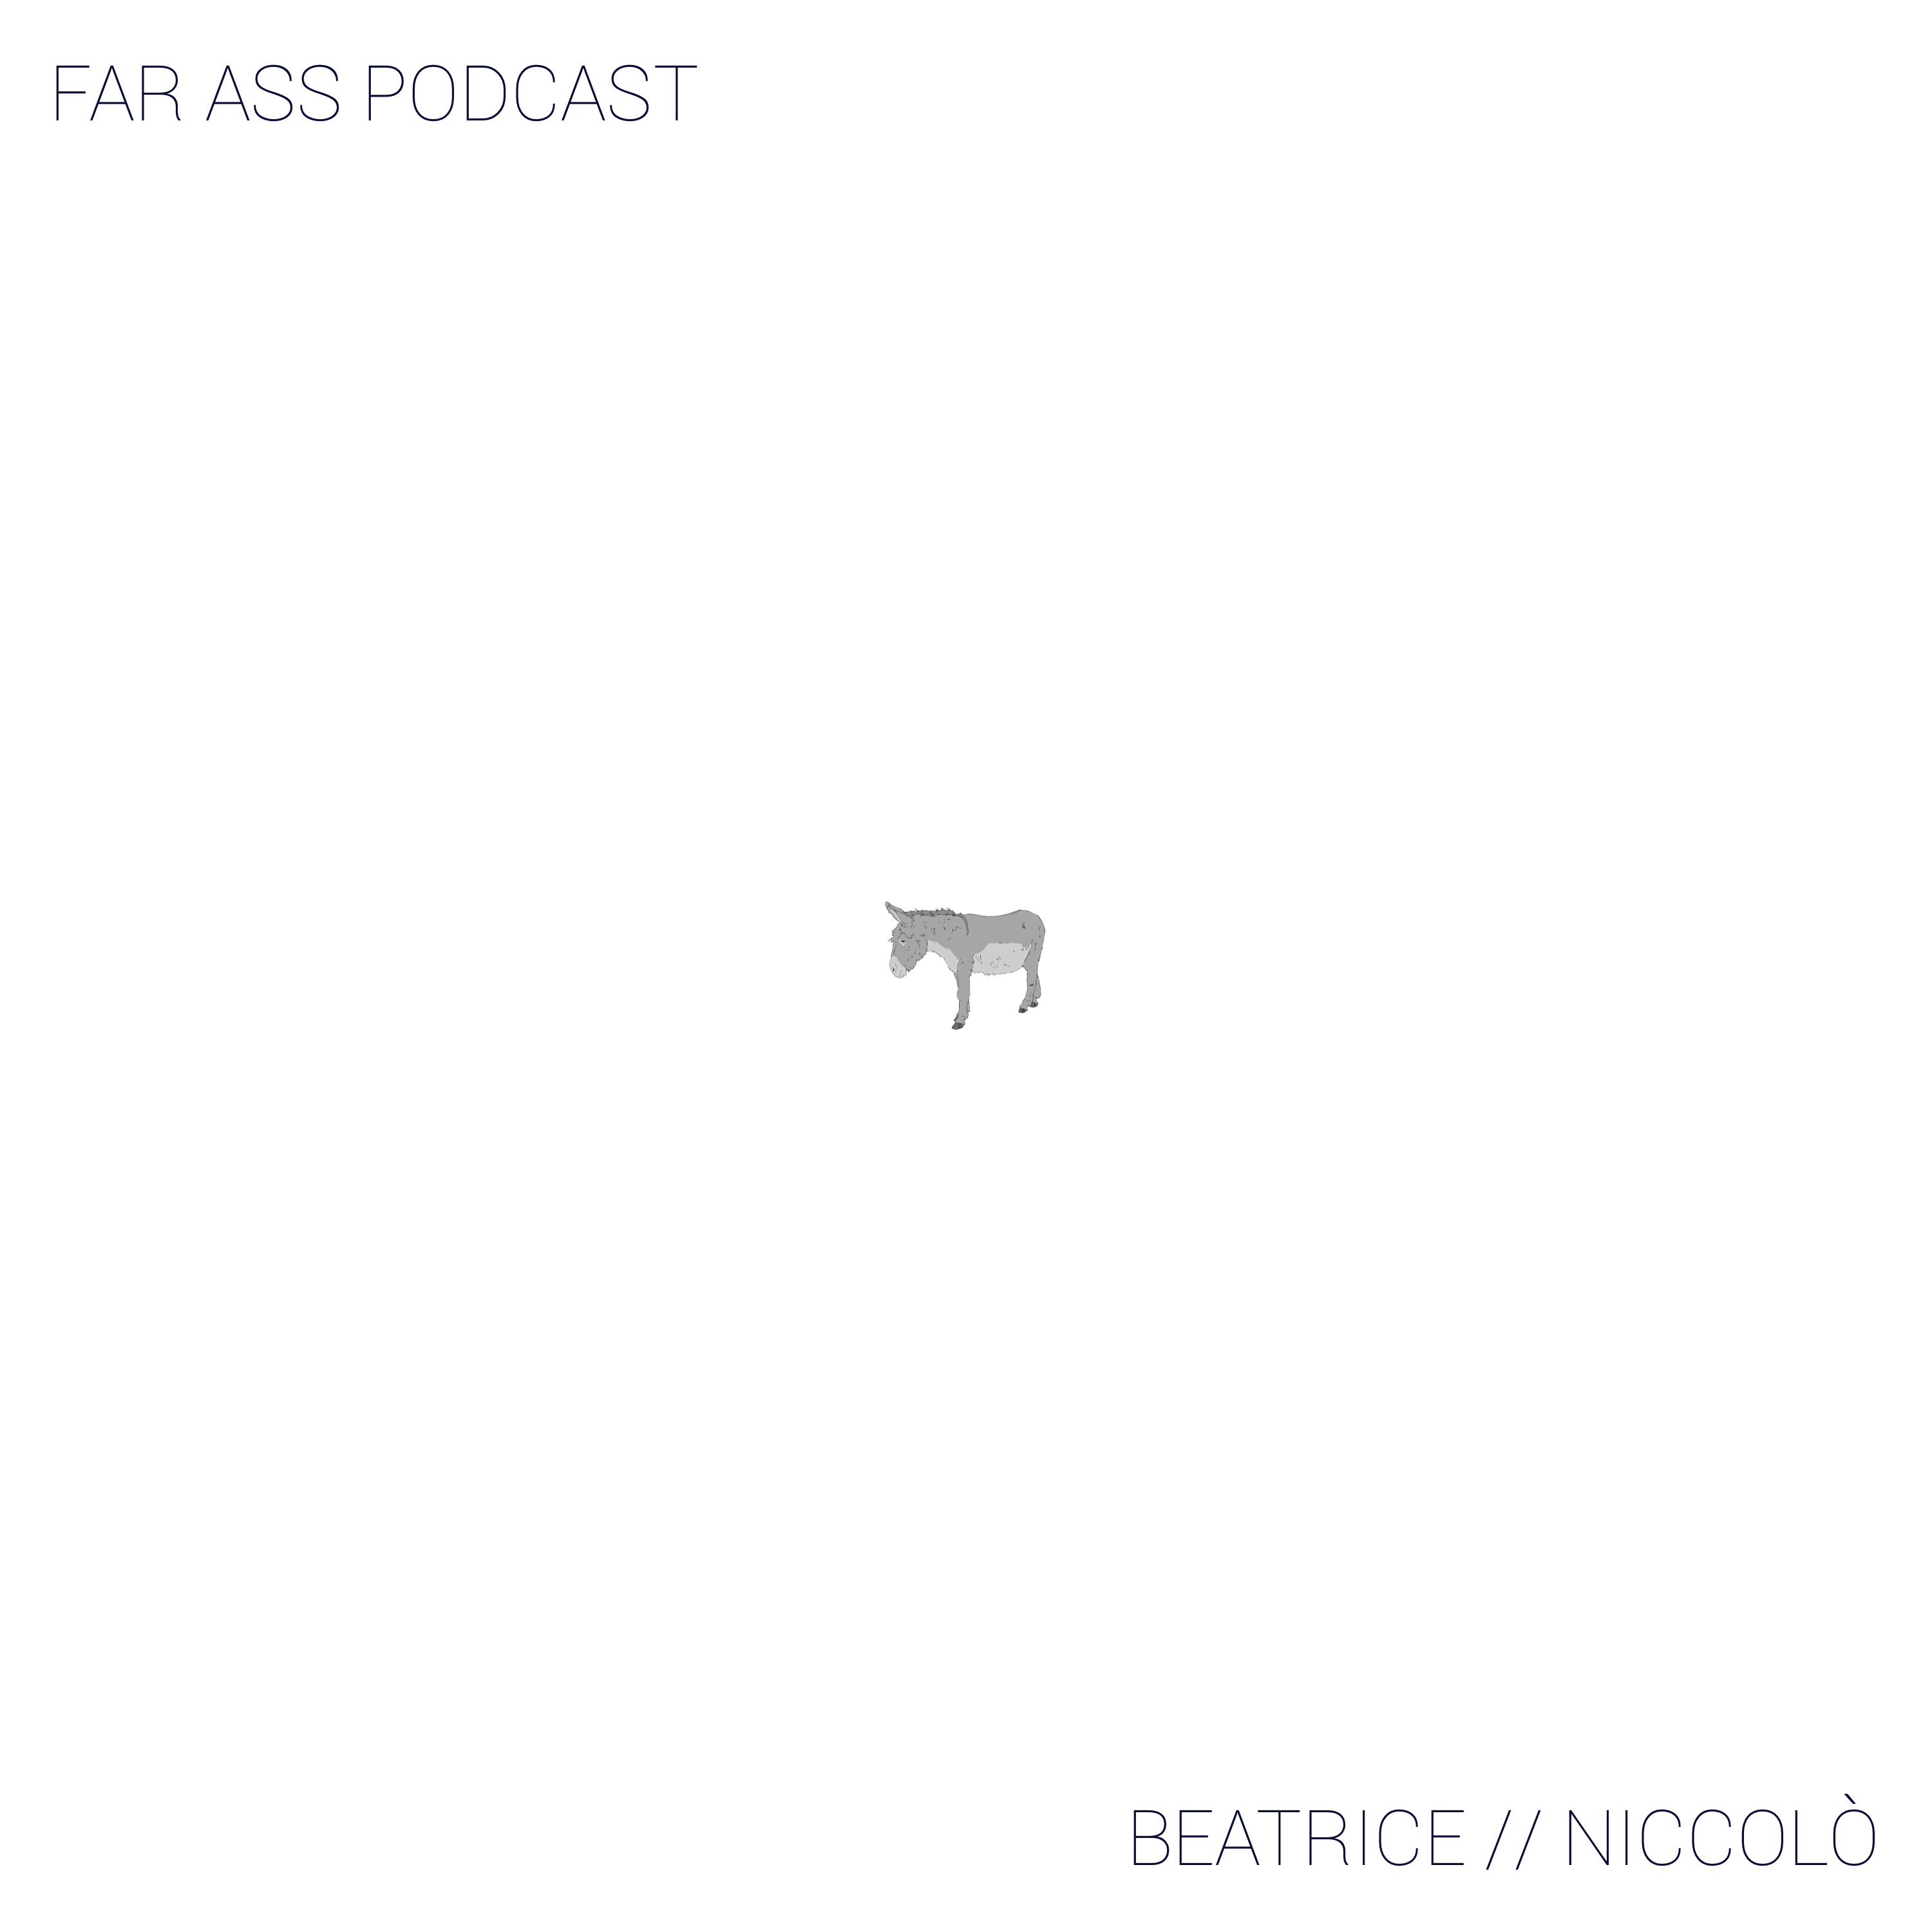 Immagine di anteprima del progetto Far Ass Podcast.